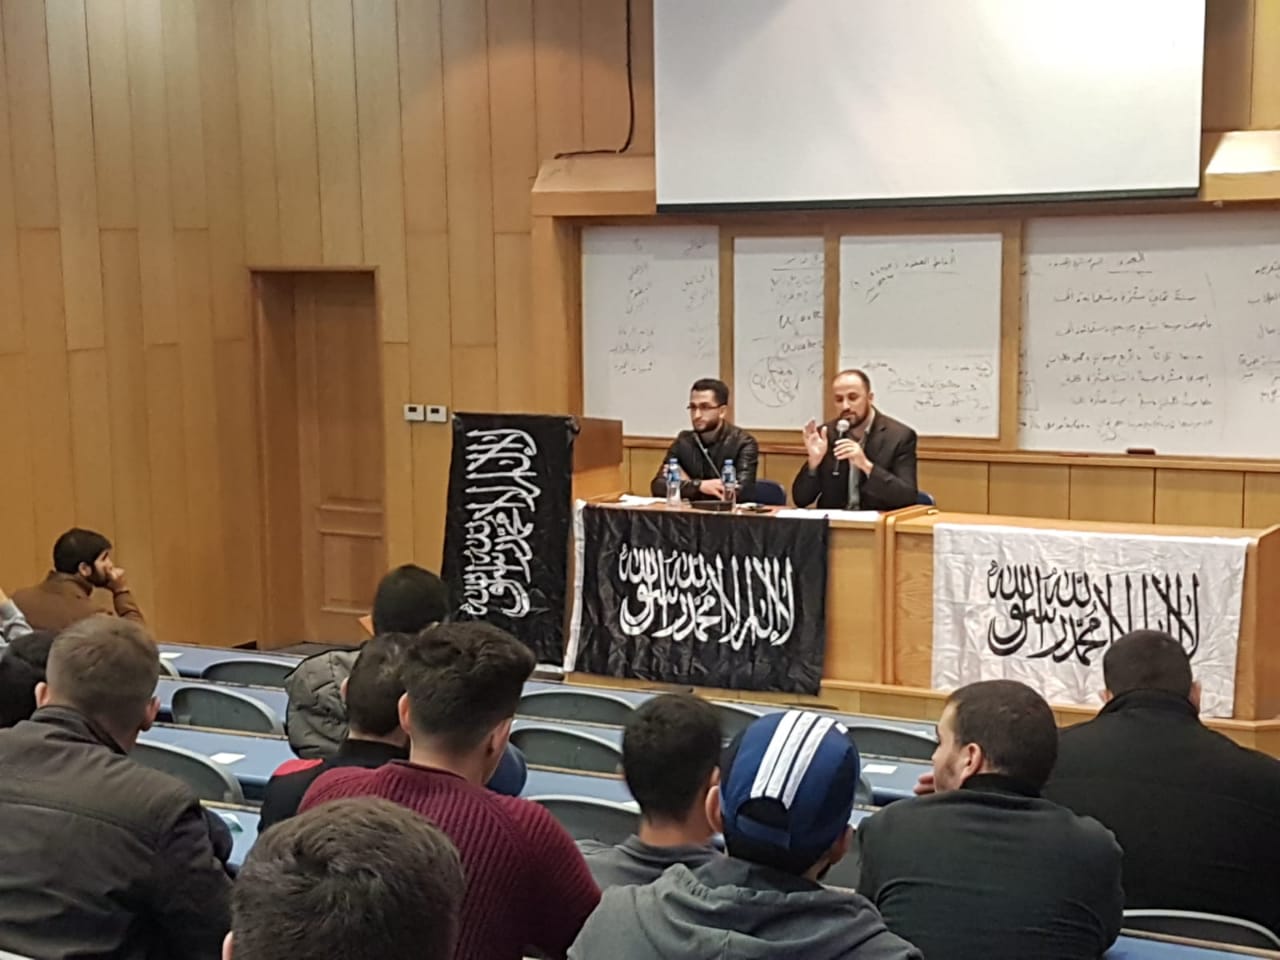 كتلة الوعي بالنجاح تعقد محاضرة حول فلسفة النوع الاجتماعي من وجهة نظرة الإسلام